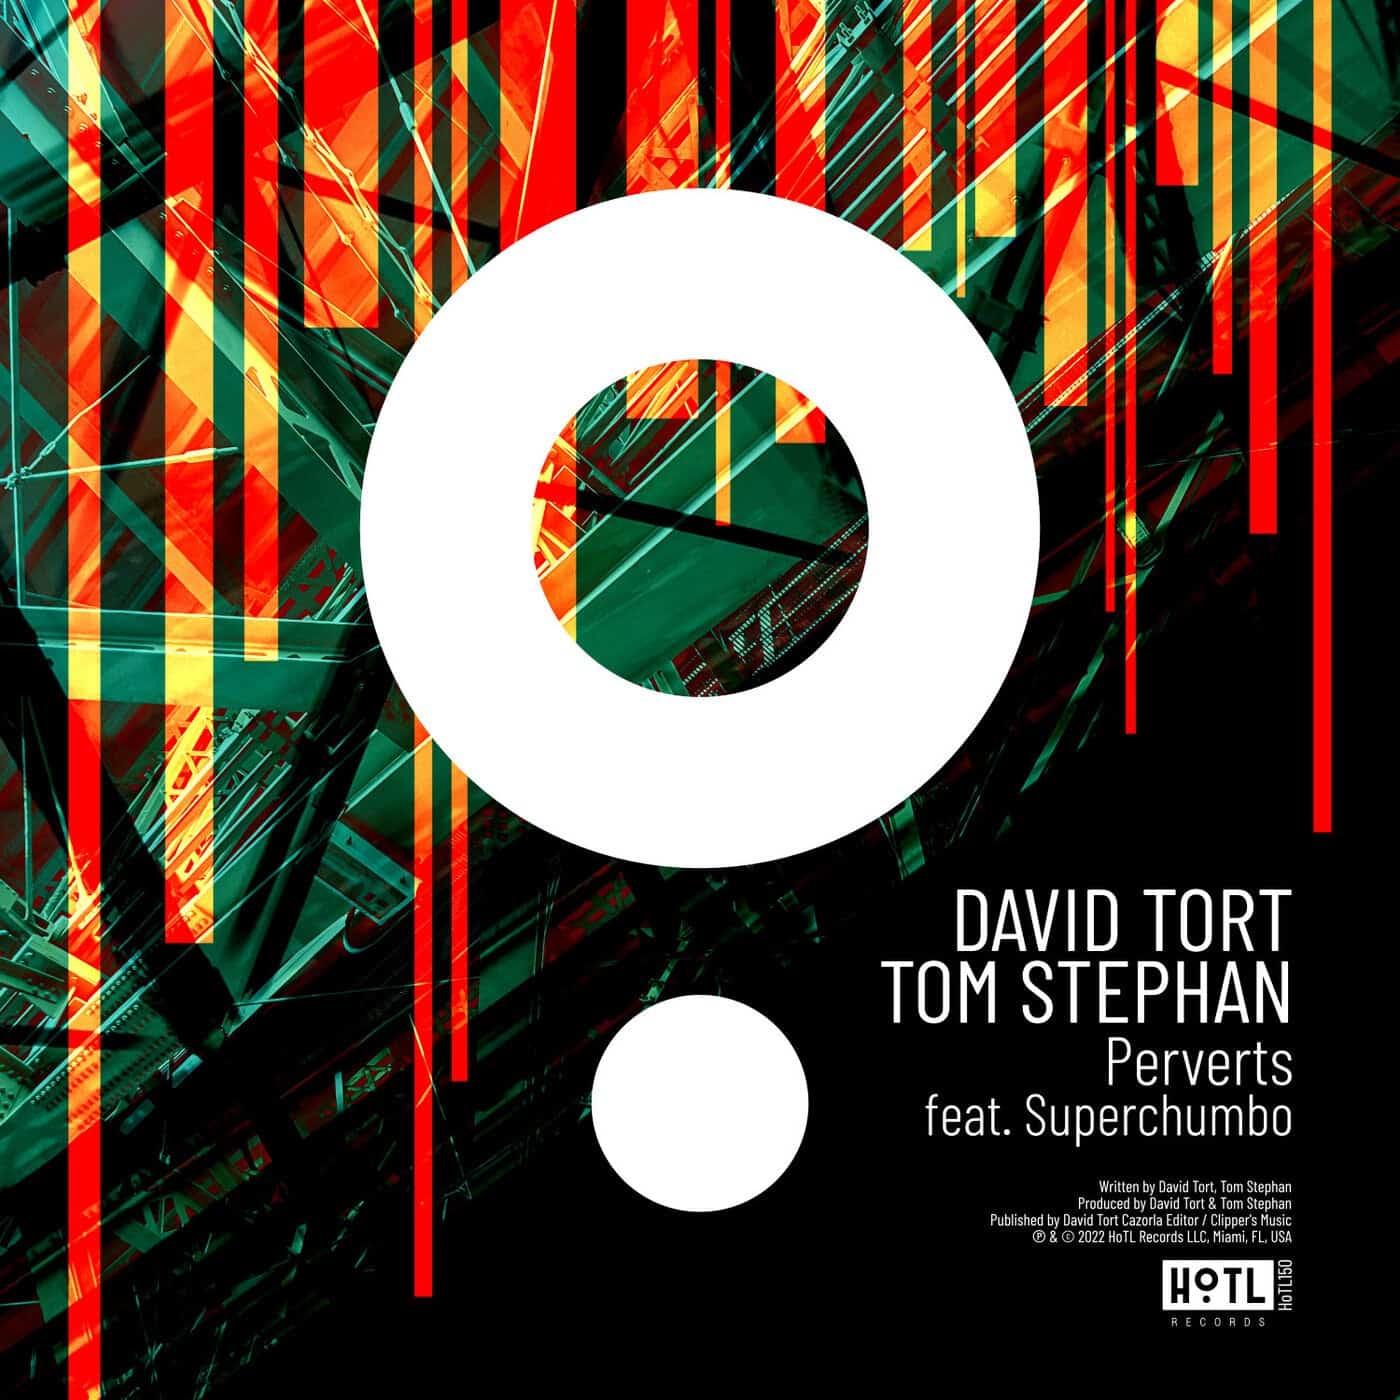 Download David Tort, Tom Stephan - Perverts on Electrobuzz